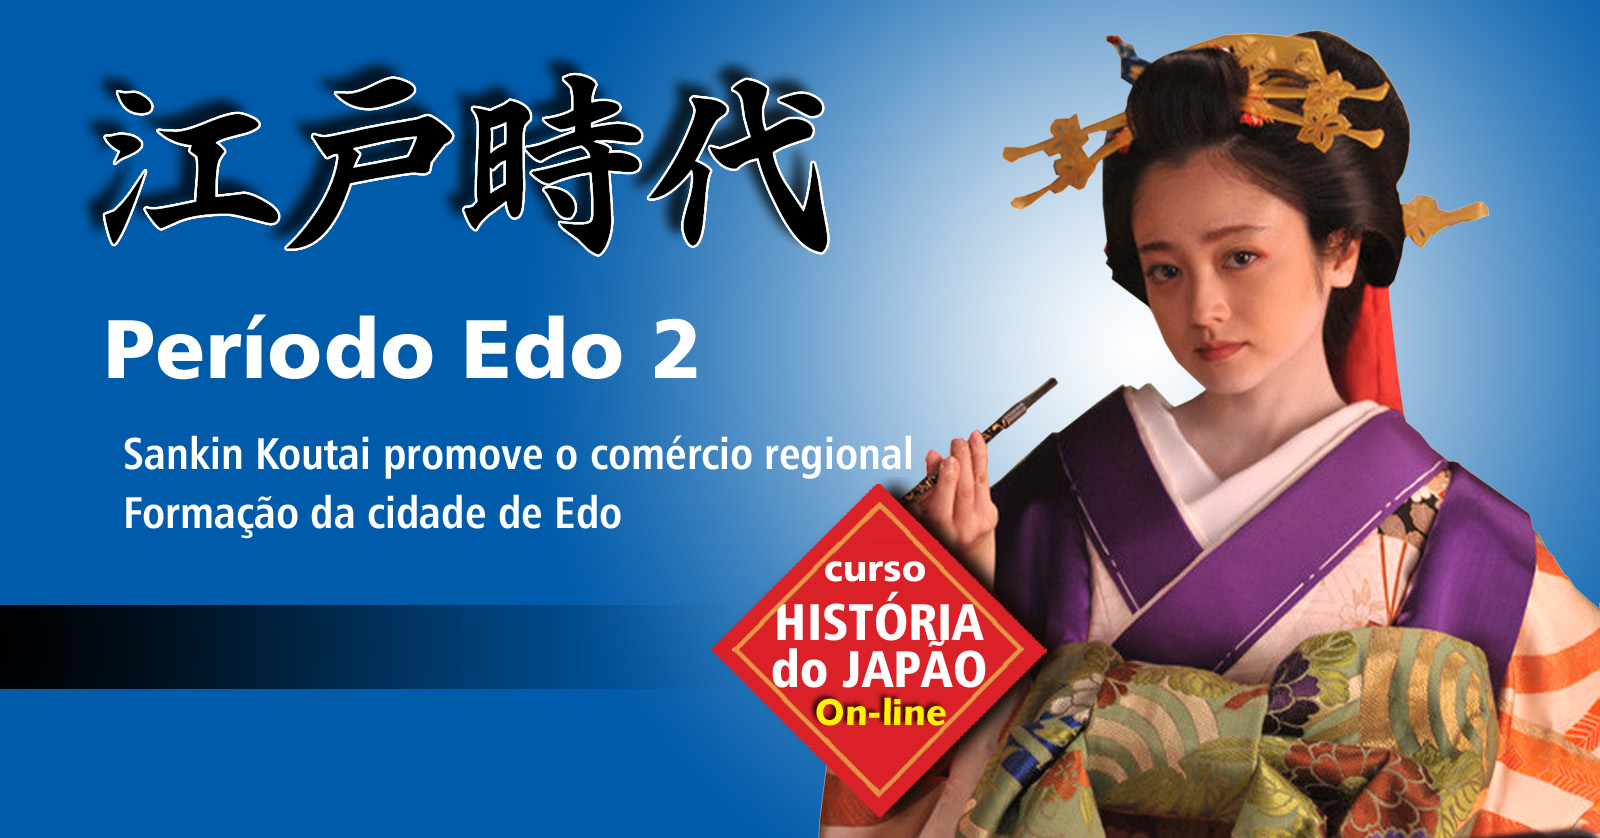 Curso de História do Japão – Aula 08 – Período Edo 2 – Formação da Cidade de Edo